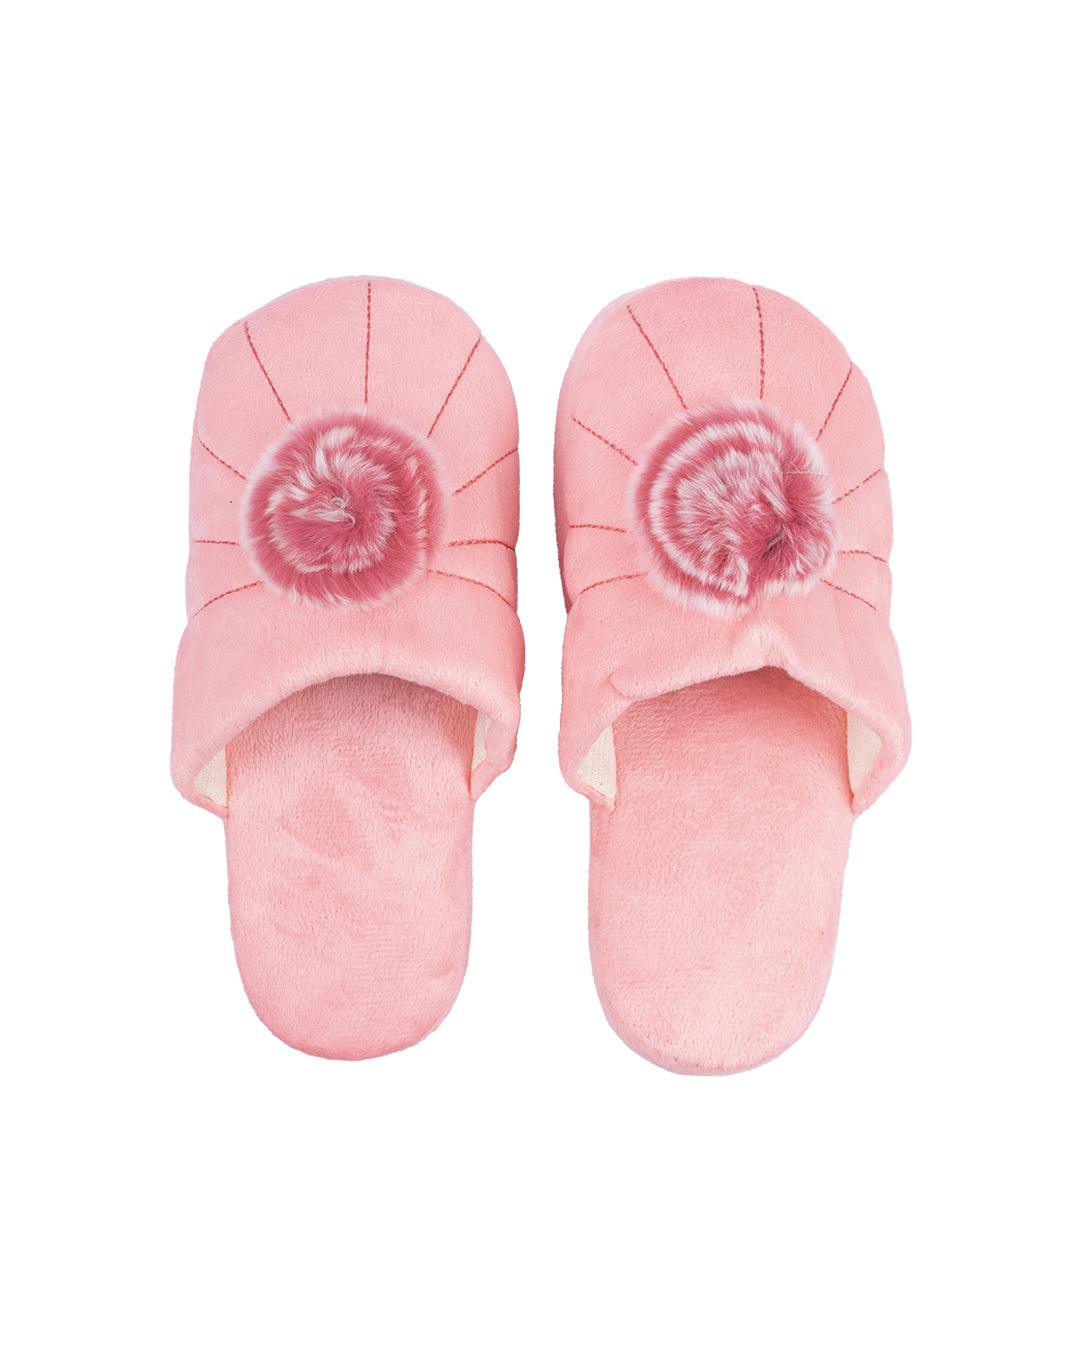 Donati Bedroom Slippers, Pom Pom Design, Pink, Polyester - MARKET 99